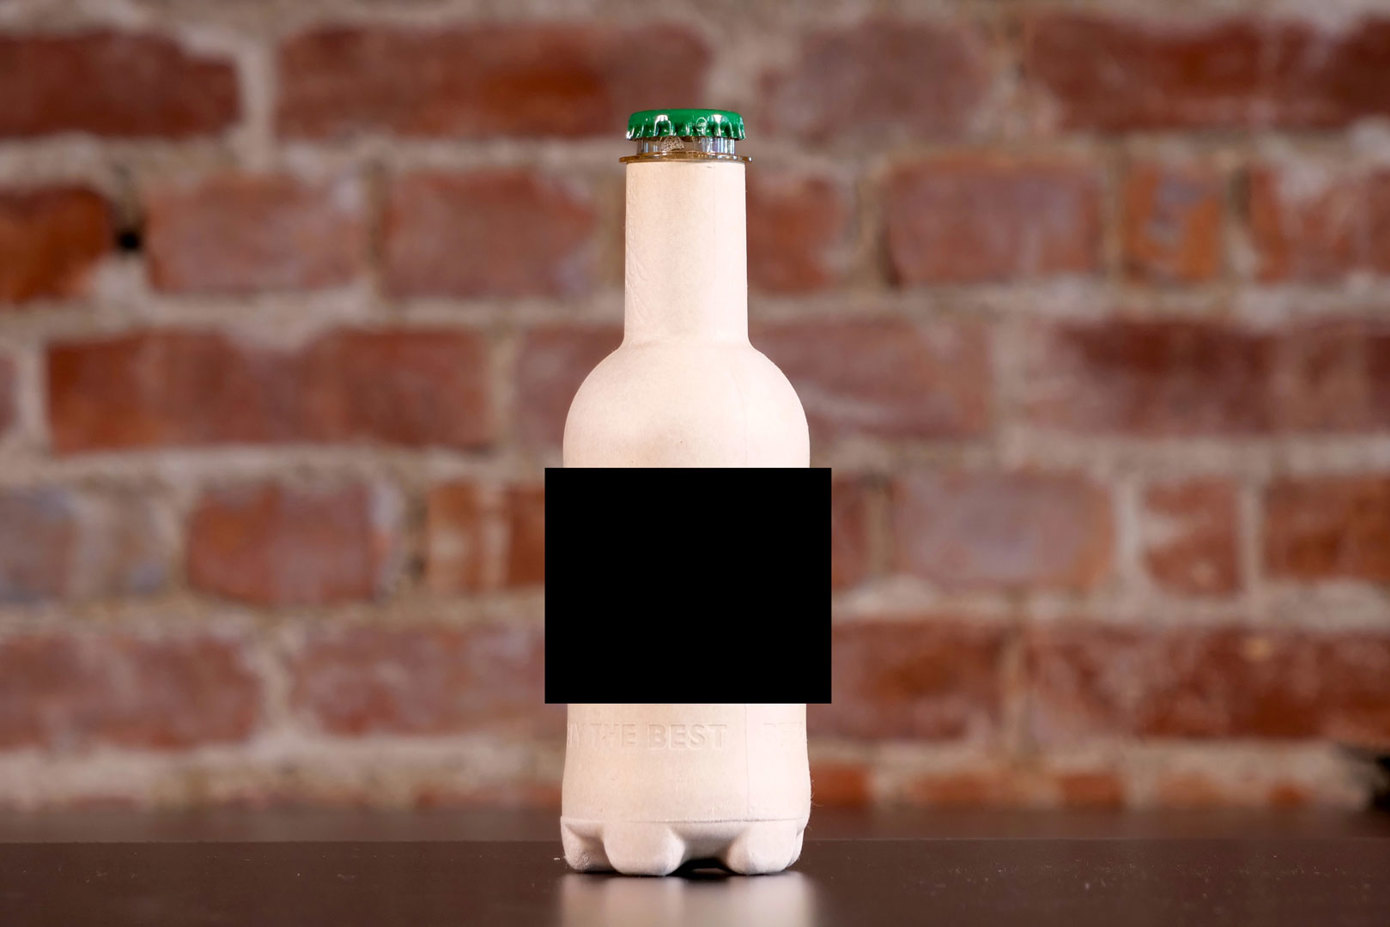 Slik ser den nye trefiberflasken ut. Grunnet alkoholreklameforbudet i Norge er flasken sladdet.